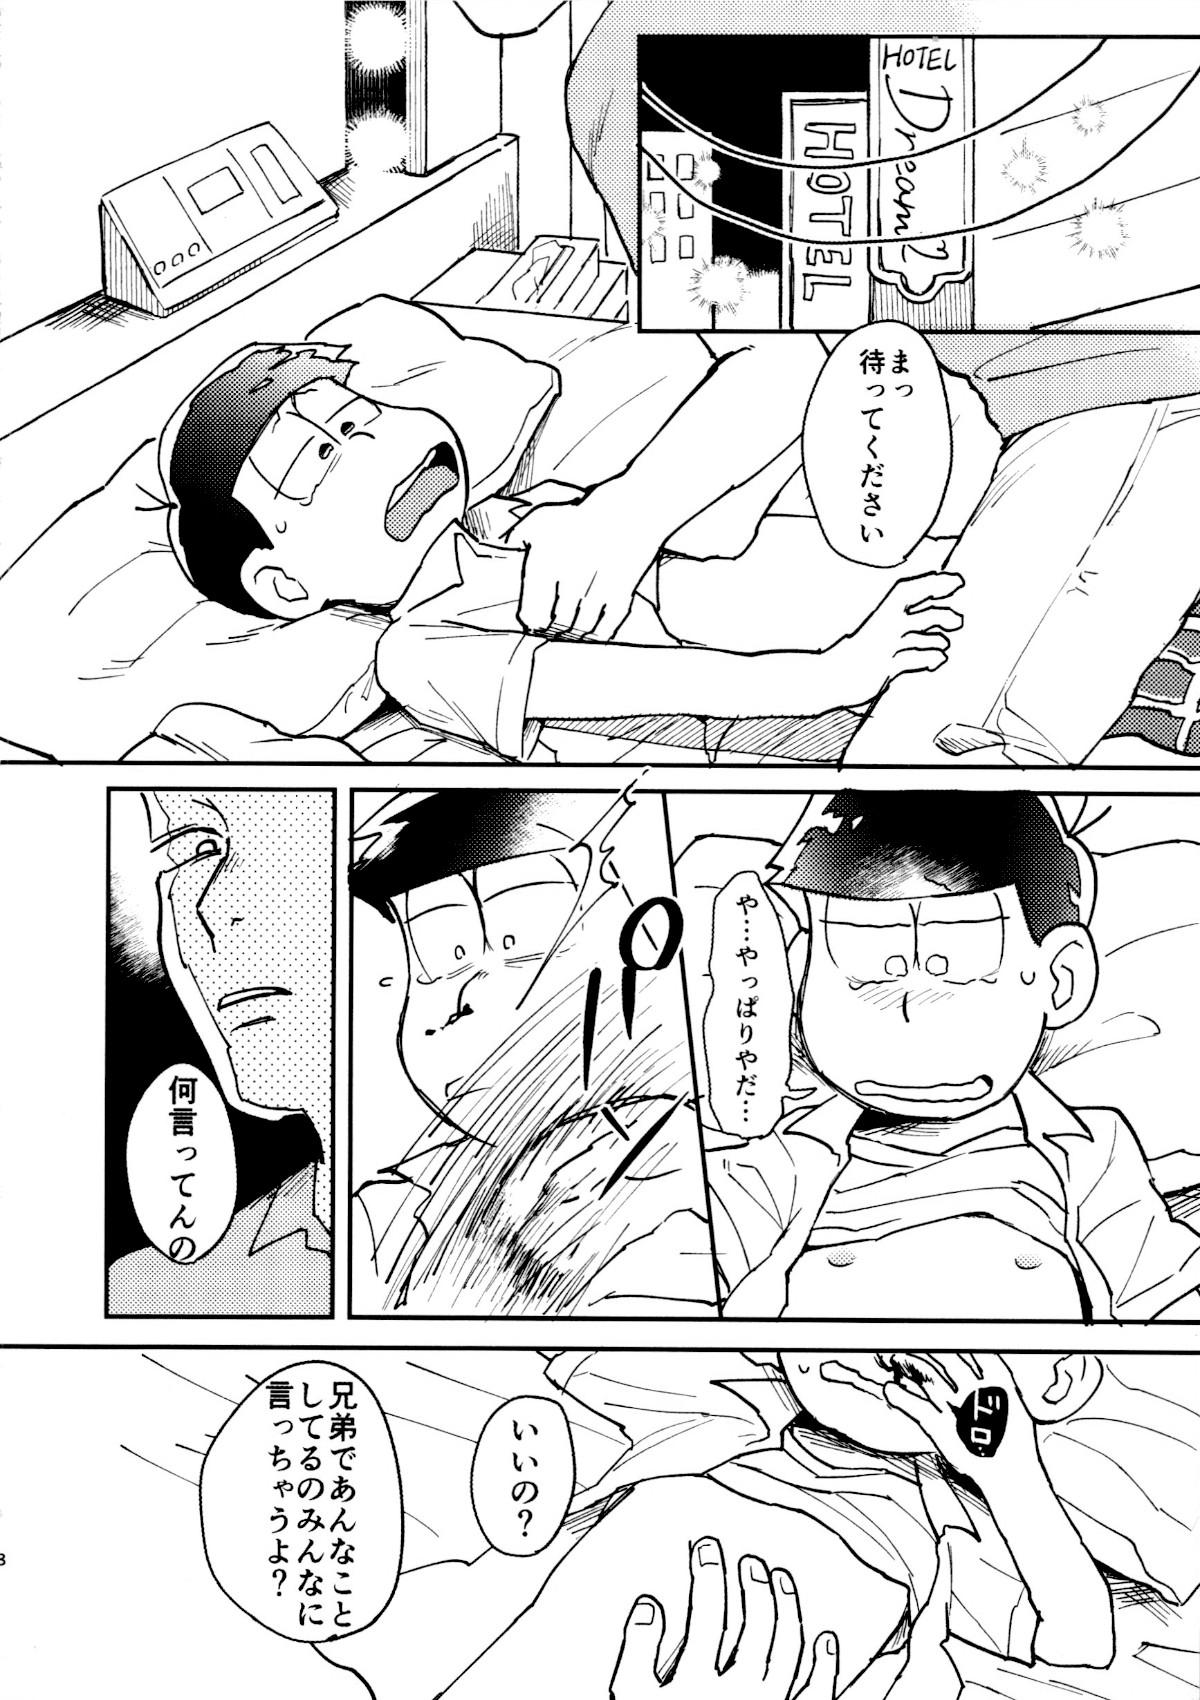 Gapes Gaping Asshole Dog Training - Osomatsu san Bed - Page 9